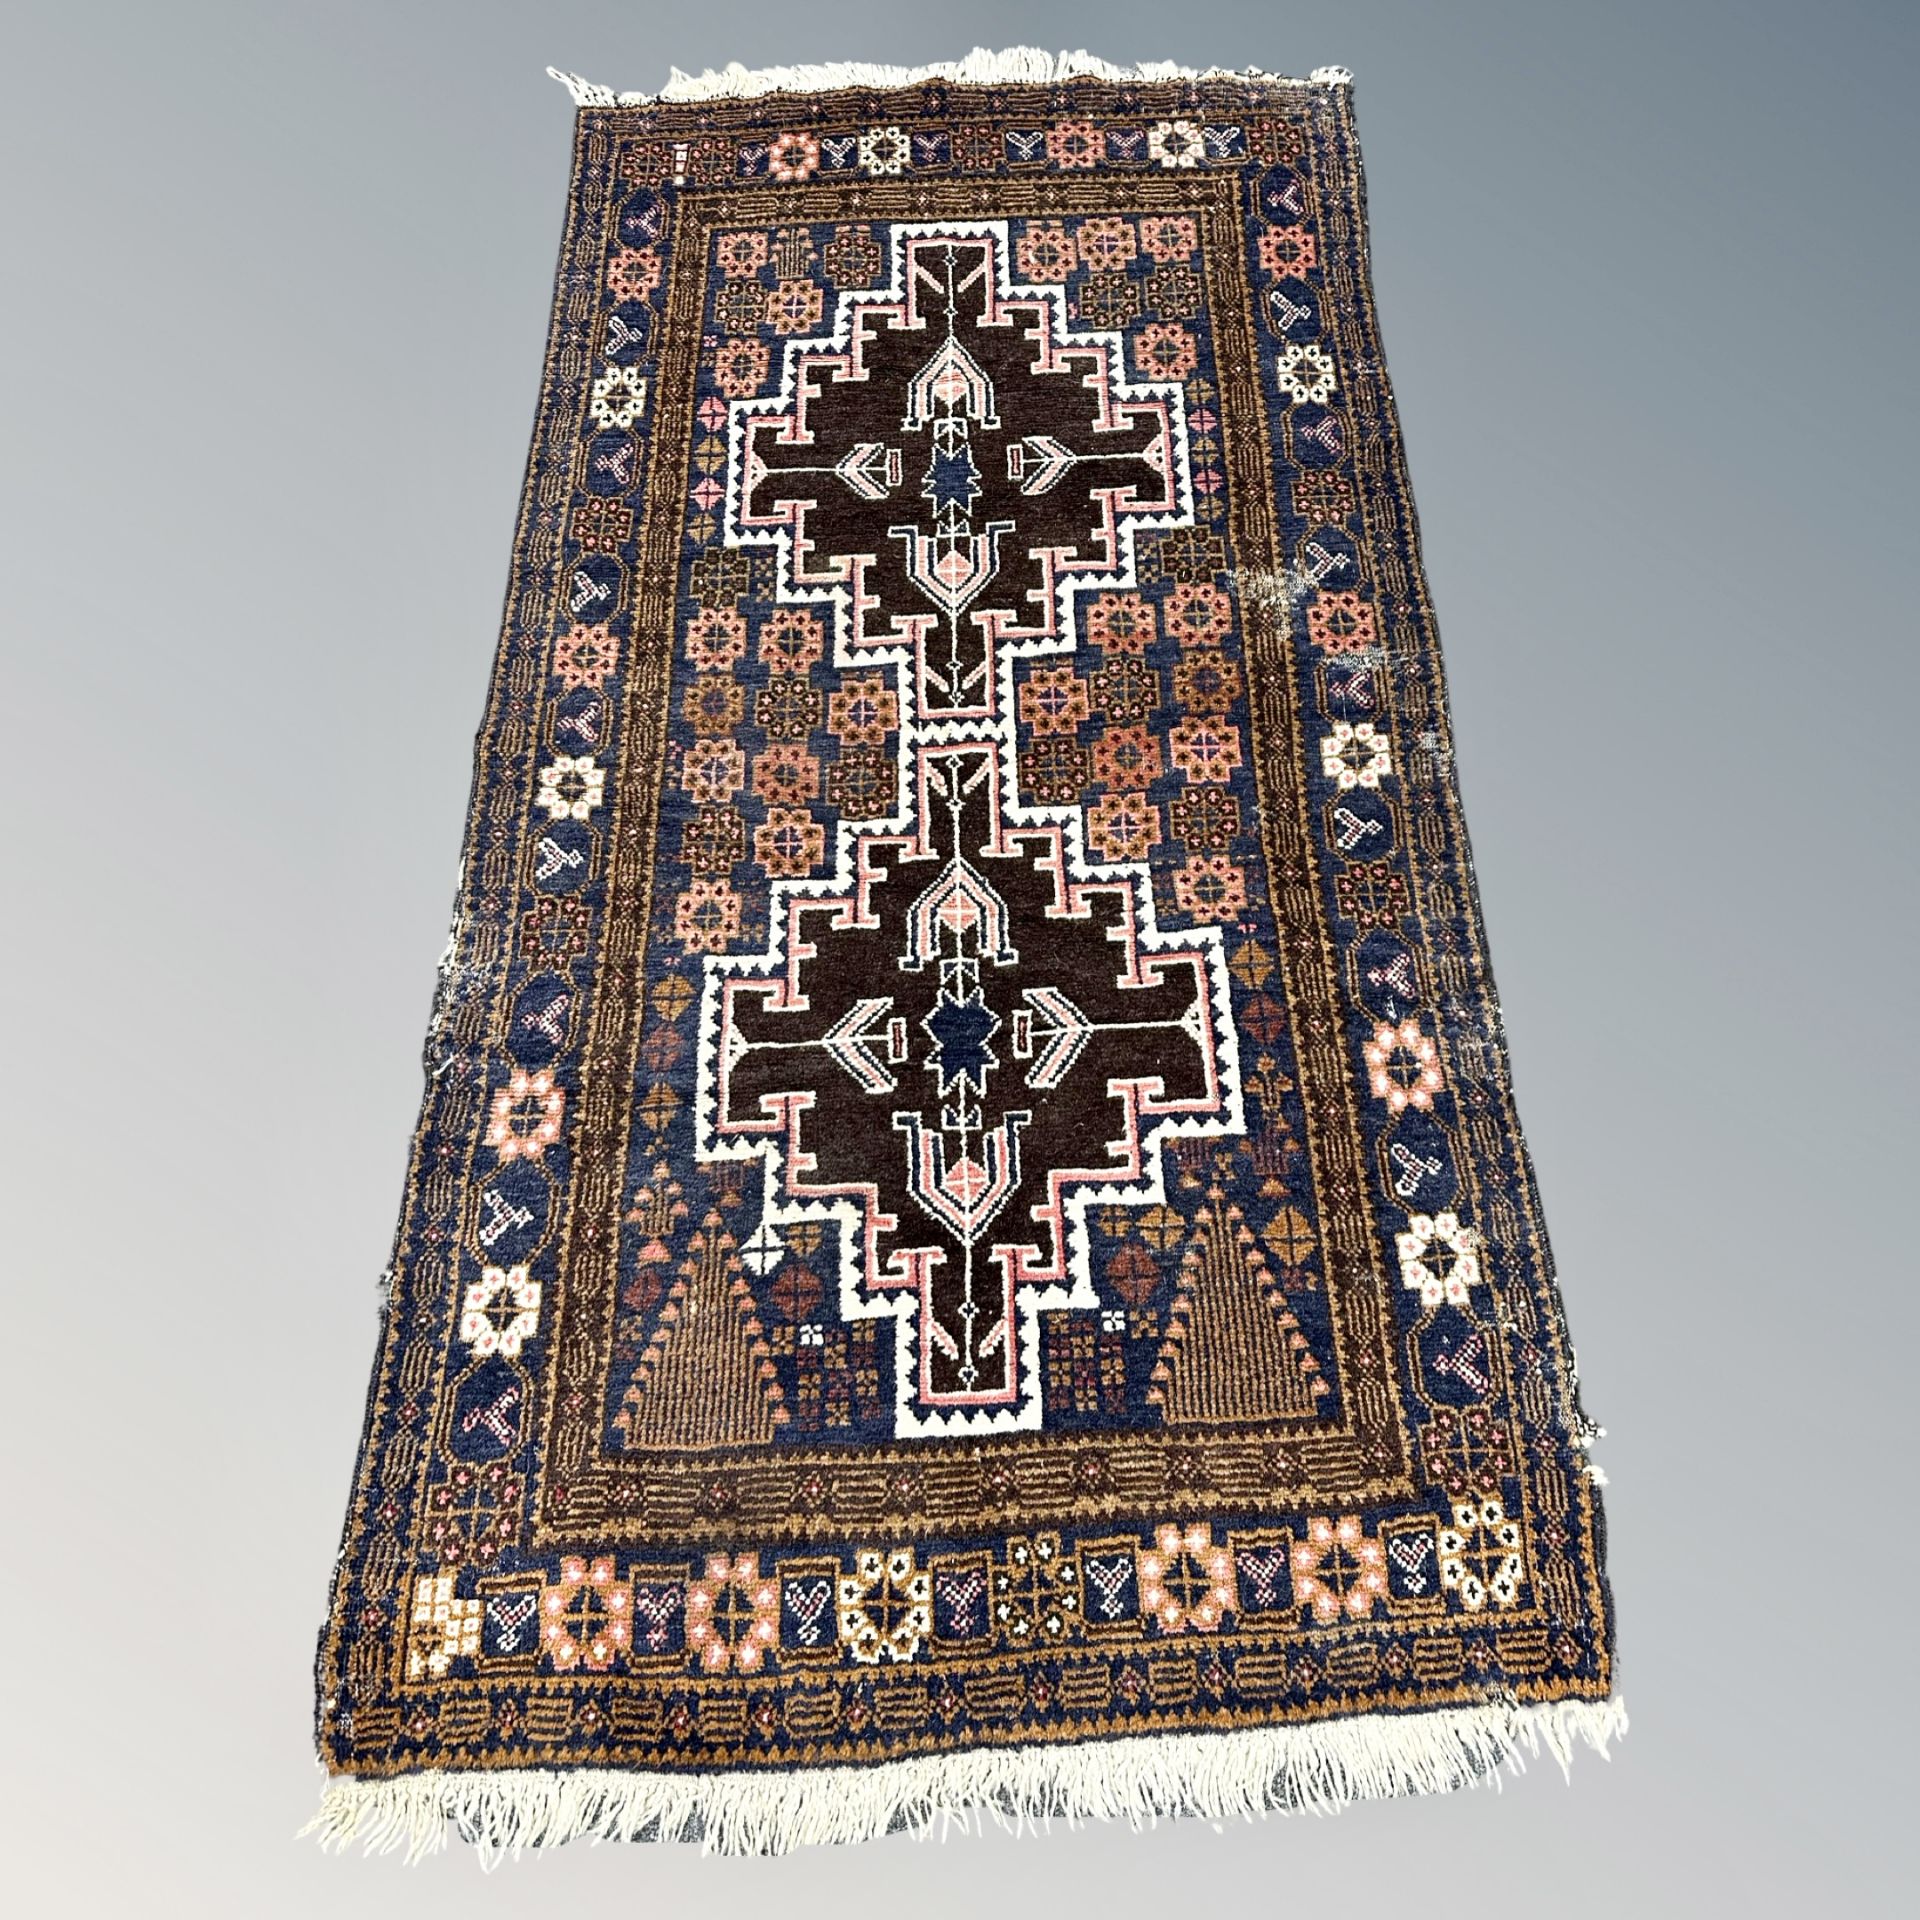 An antique Afghan/Caucasian rug, circa 1900,